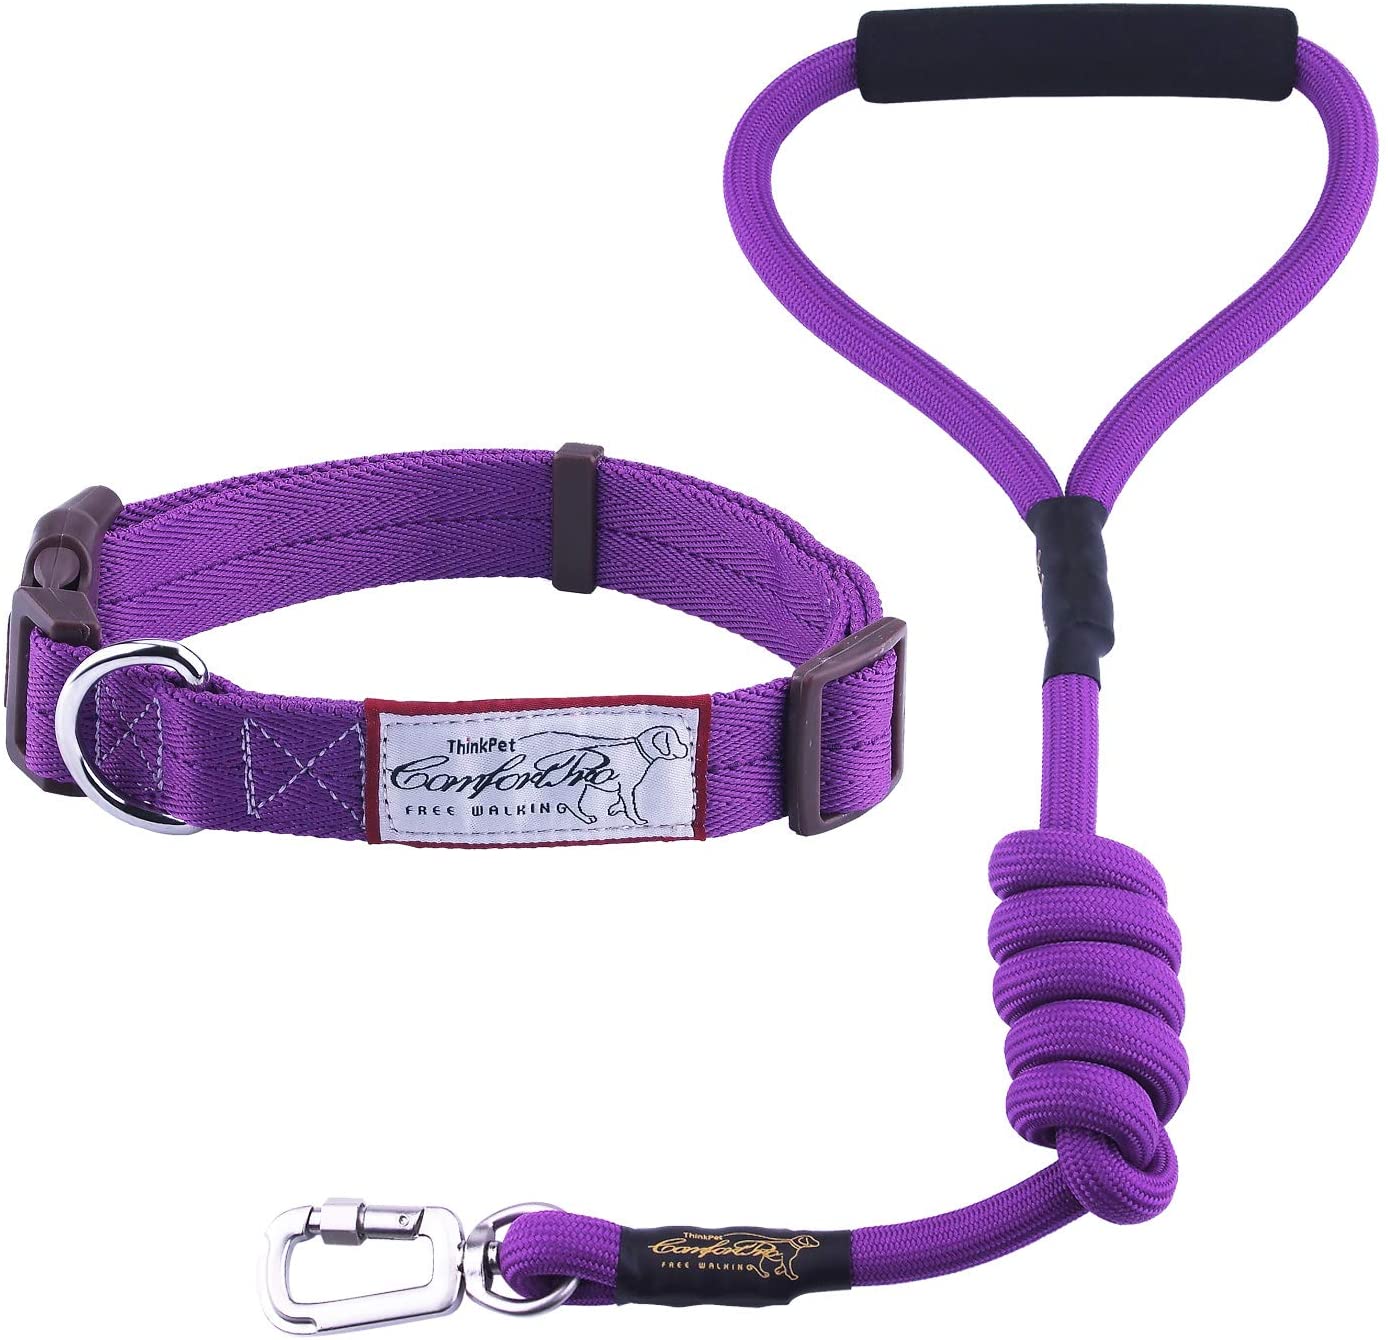  ThinkPet ComfortPro Kit de Correa y Collar Perro Conjunto Correa de Cuerda Resistente y Collar Ajustable para Perros Mediano Grande para Paseo 